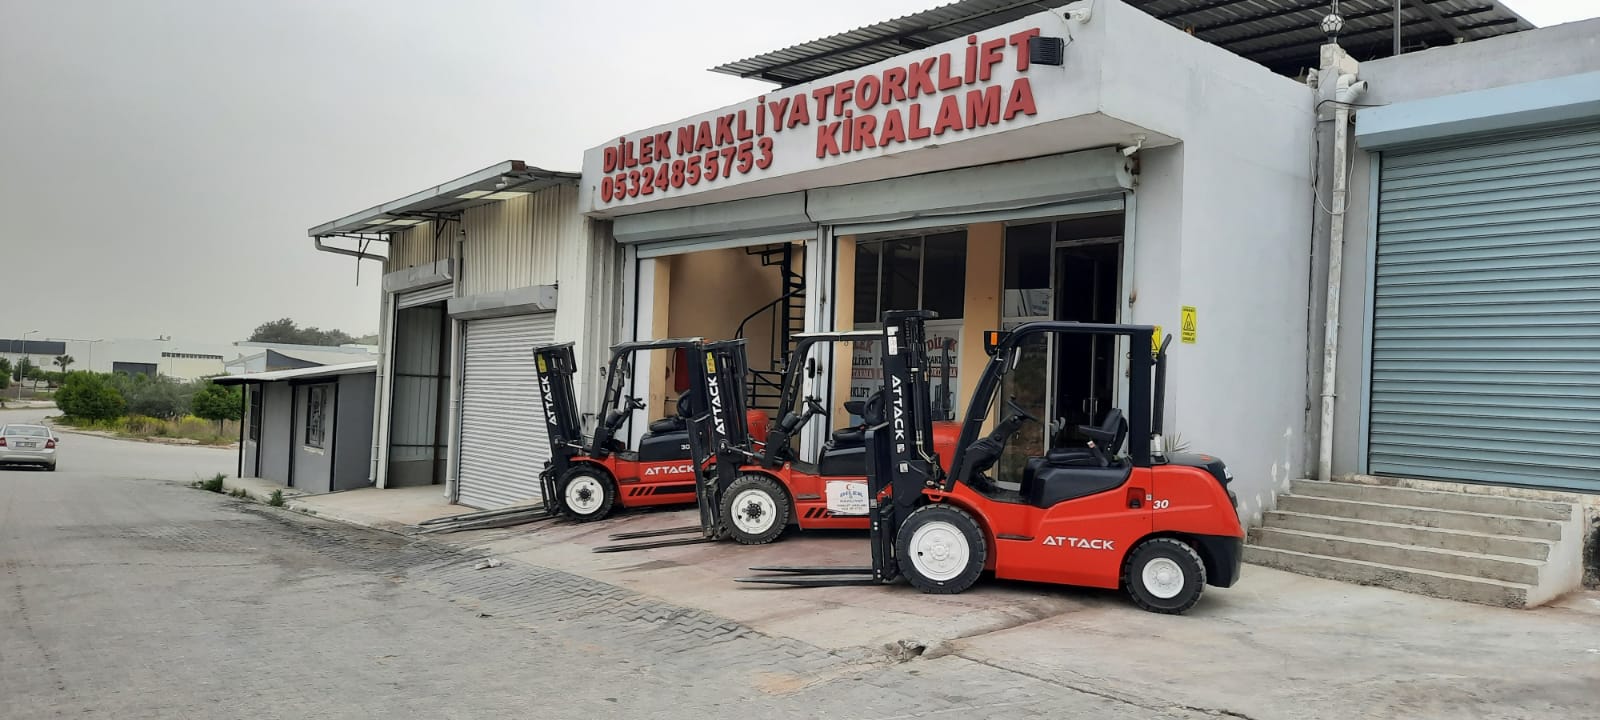 Dilek Forklift